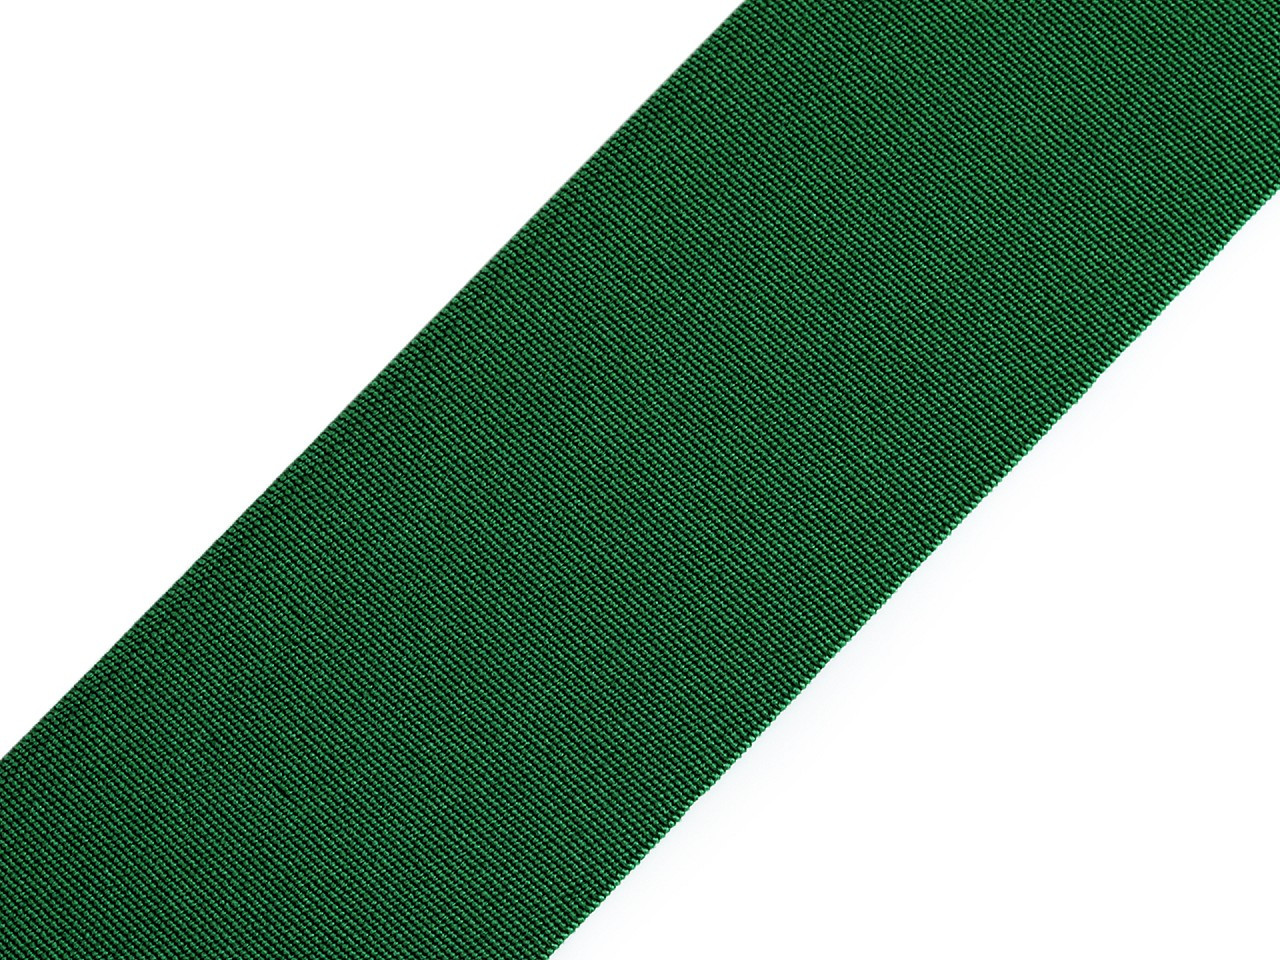 Pruženka hladká šíře 50 mm tkaná barevná, barva 4803 zelená tmavá